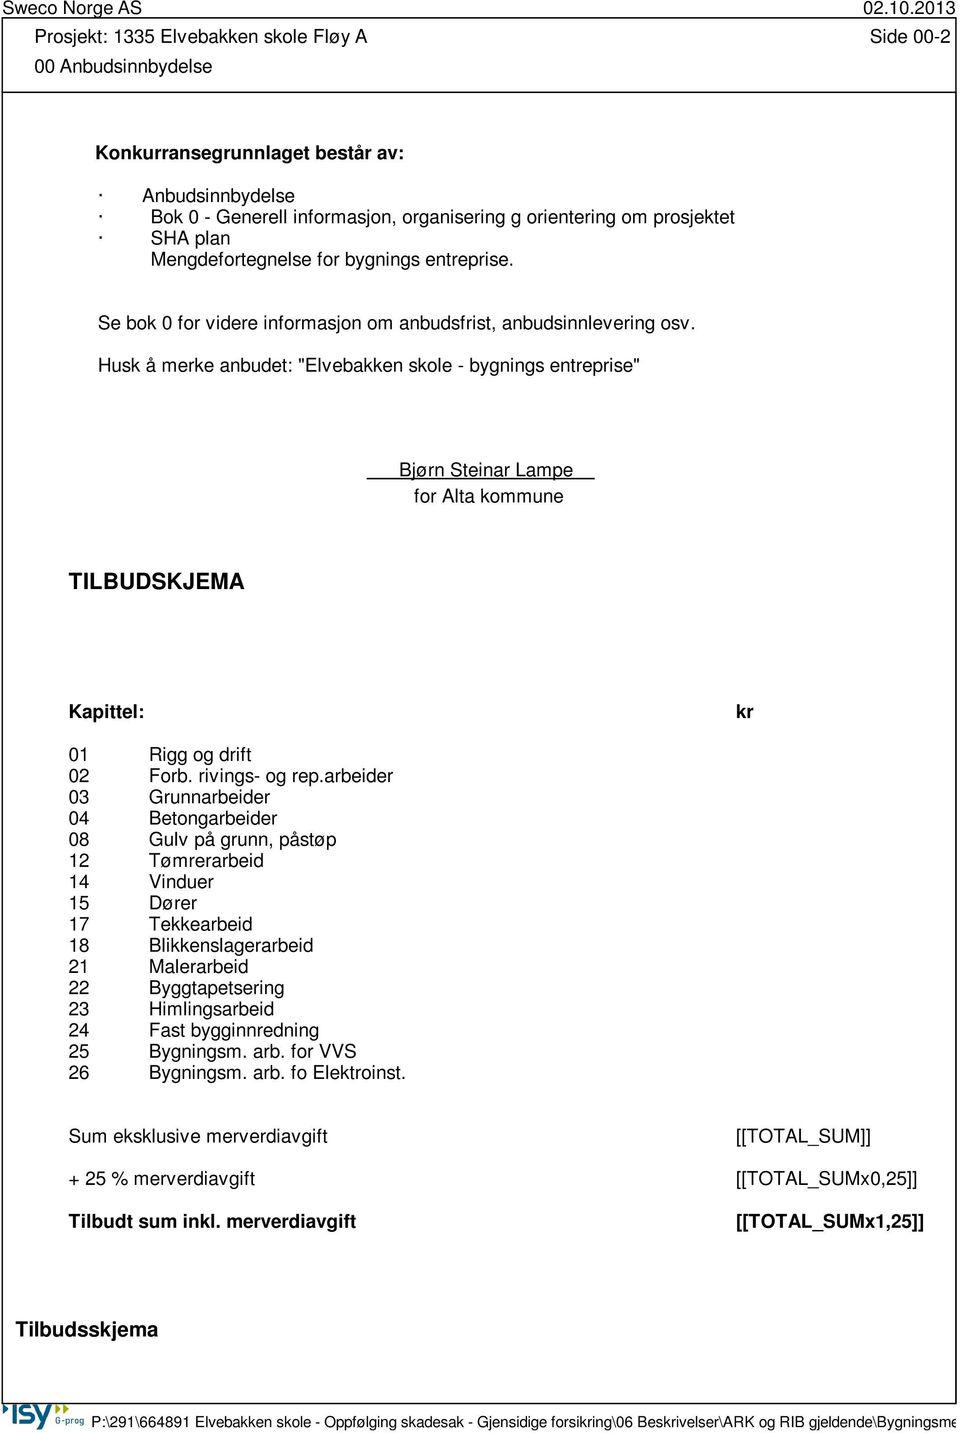 Husk å merke anbudet: "Elvebakken skole - bygnings entreprise" Bjørn Steinar Lampe for Alta kommune TILBUDSKJEMA Kapittel: kr 01 Rigg og drift 02 Forb. rivings- og rep.